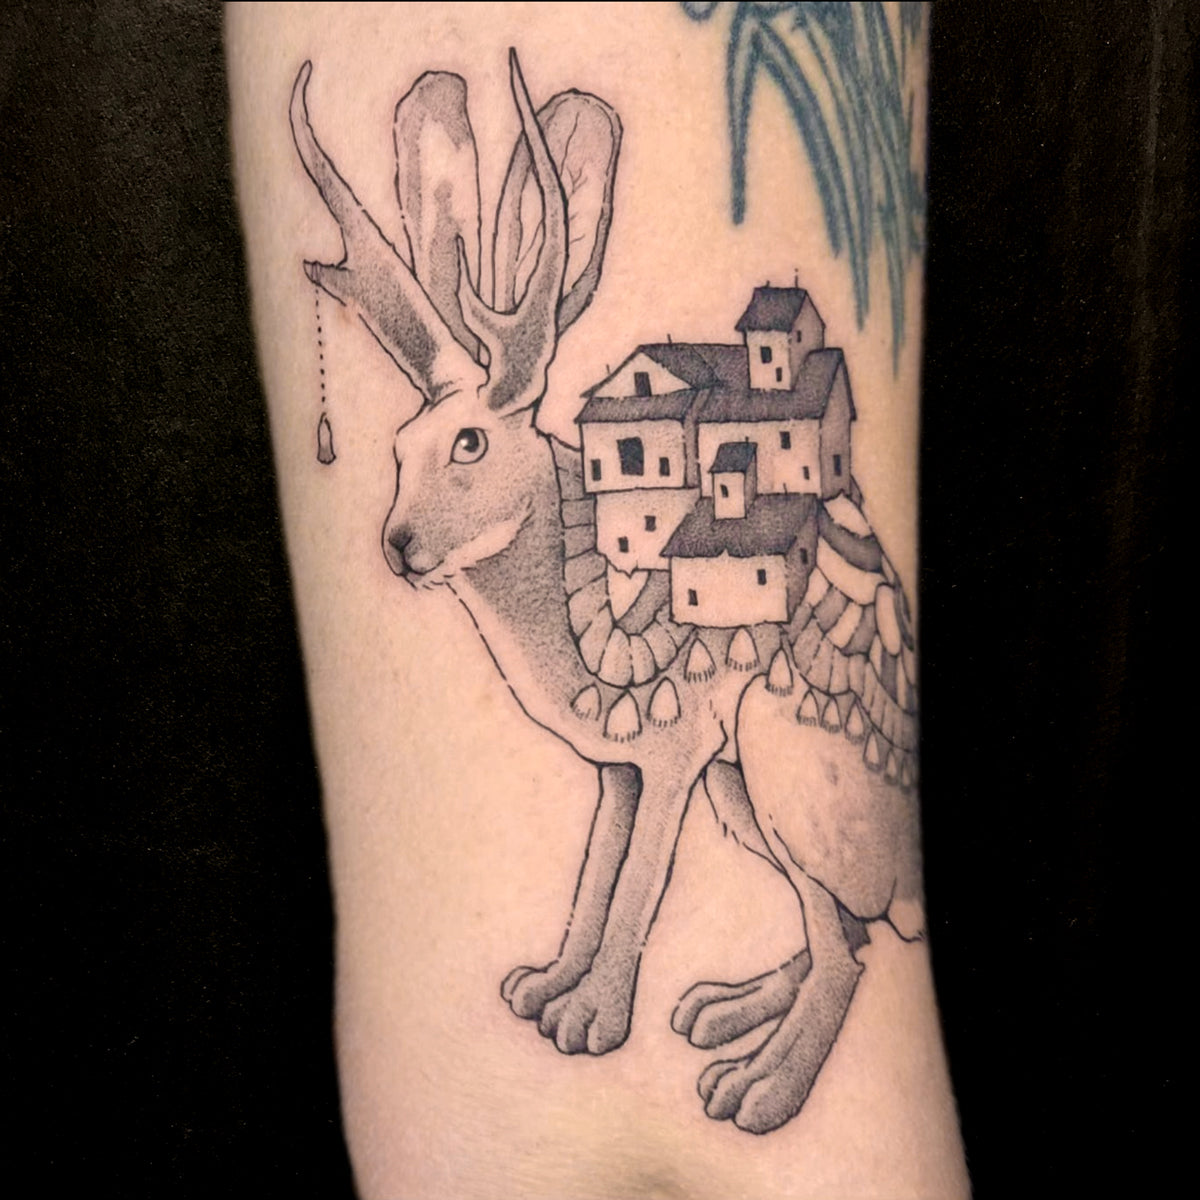 Rabbit nomad tattoo by Vincent Li